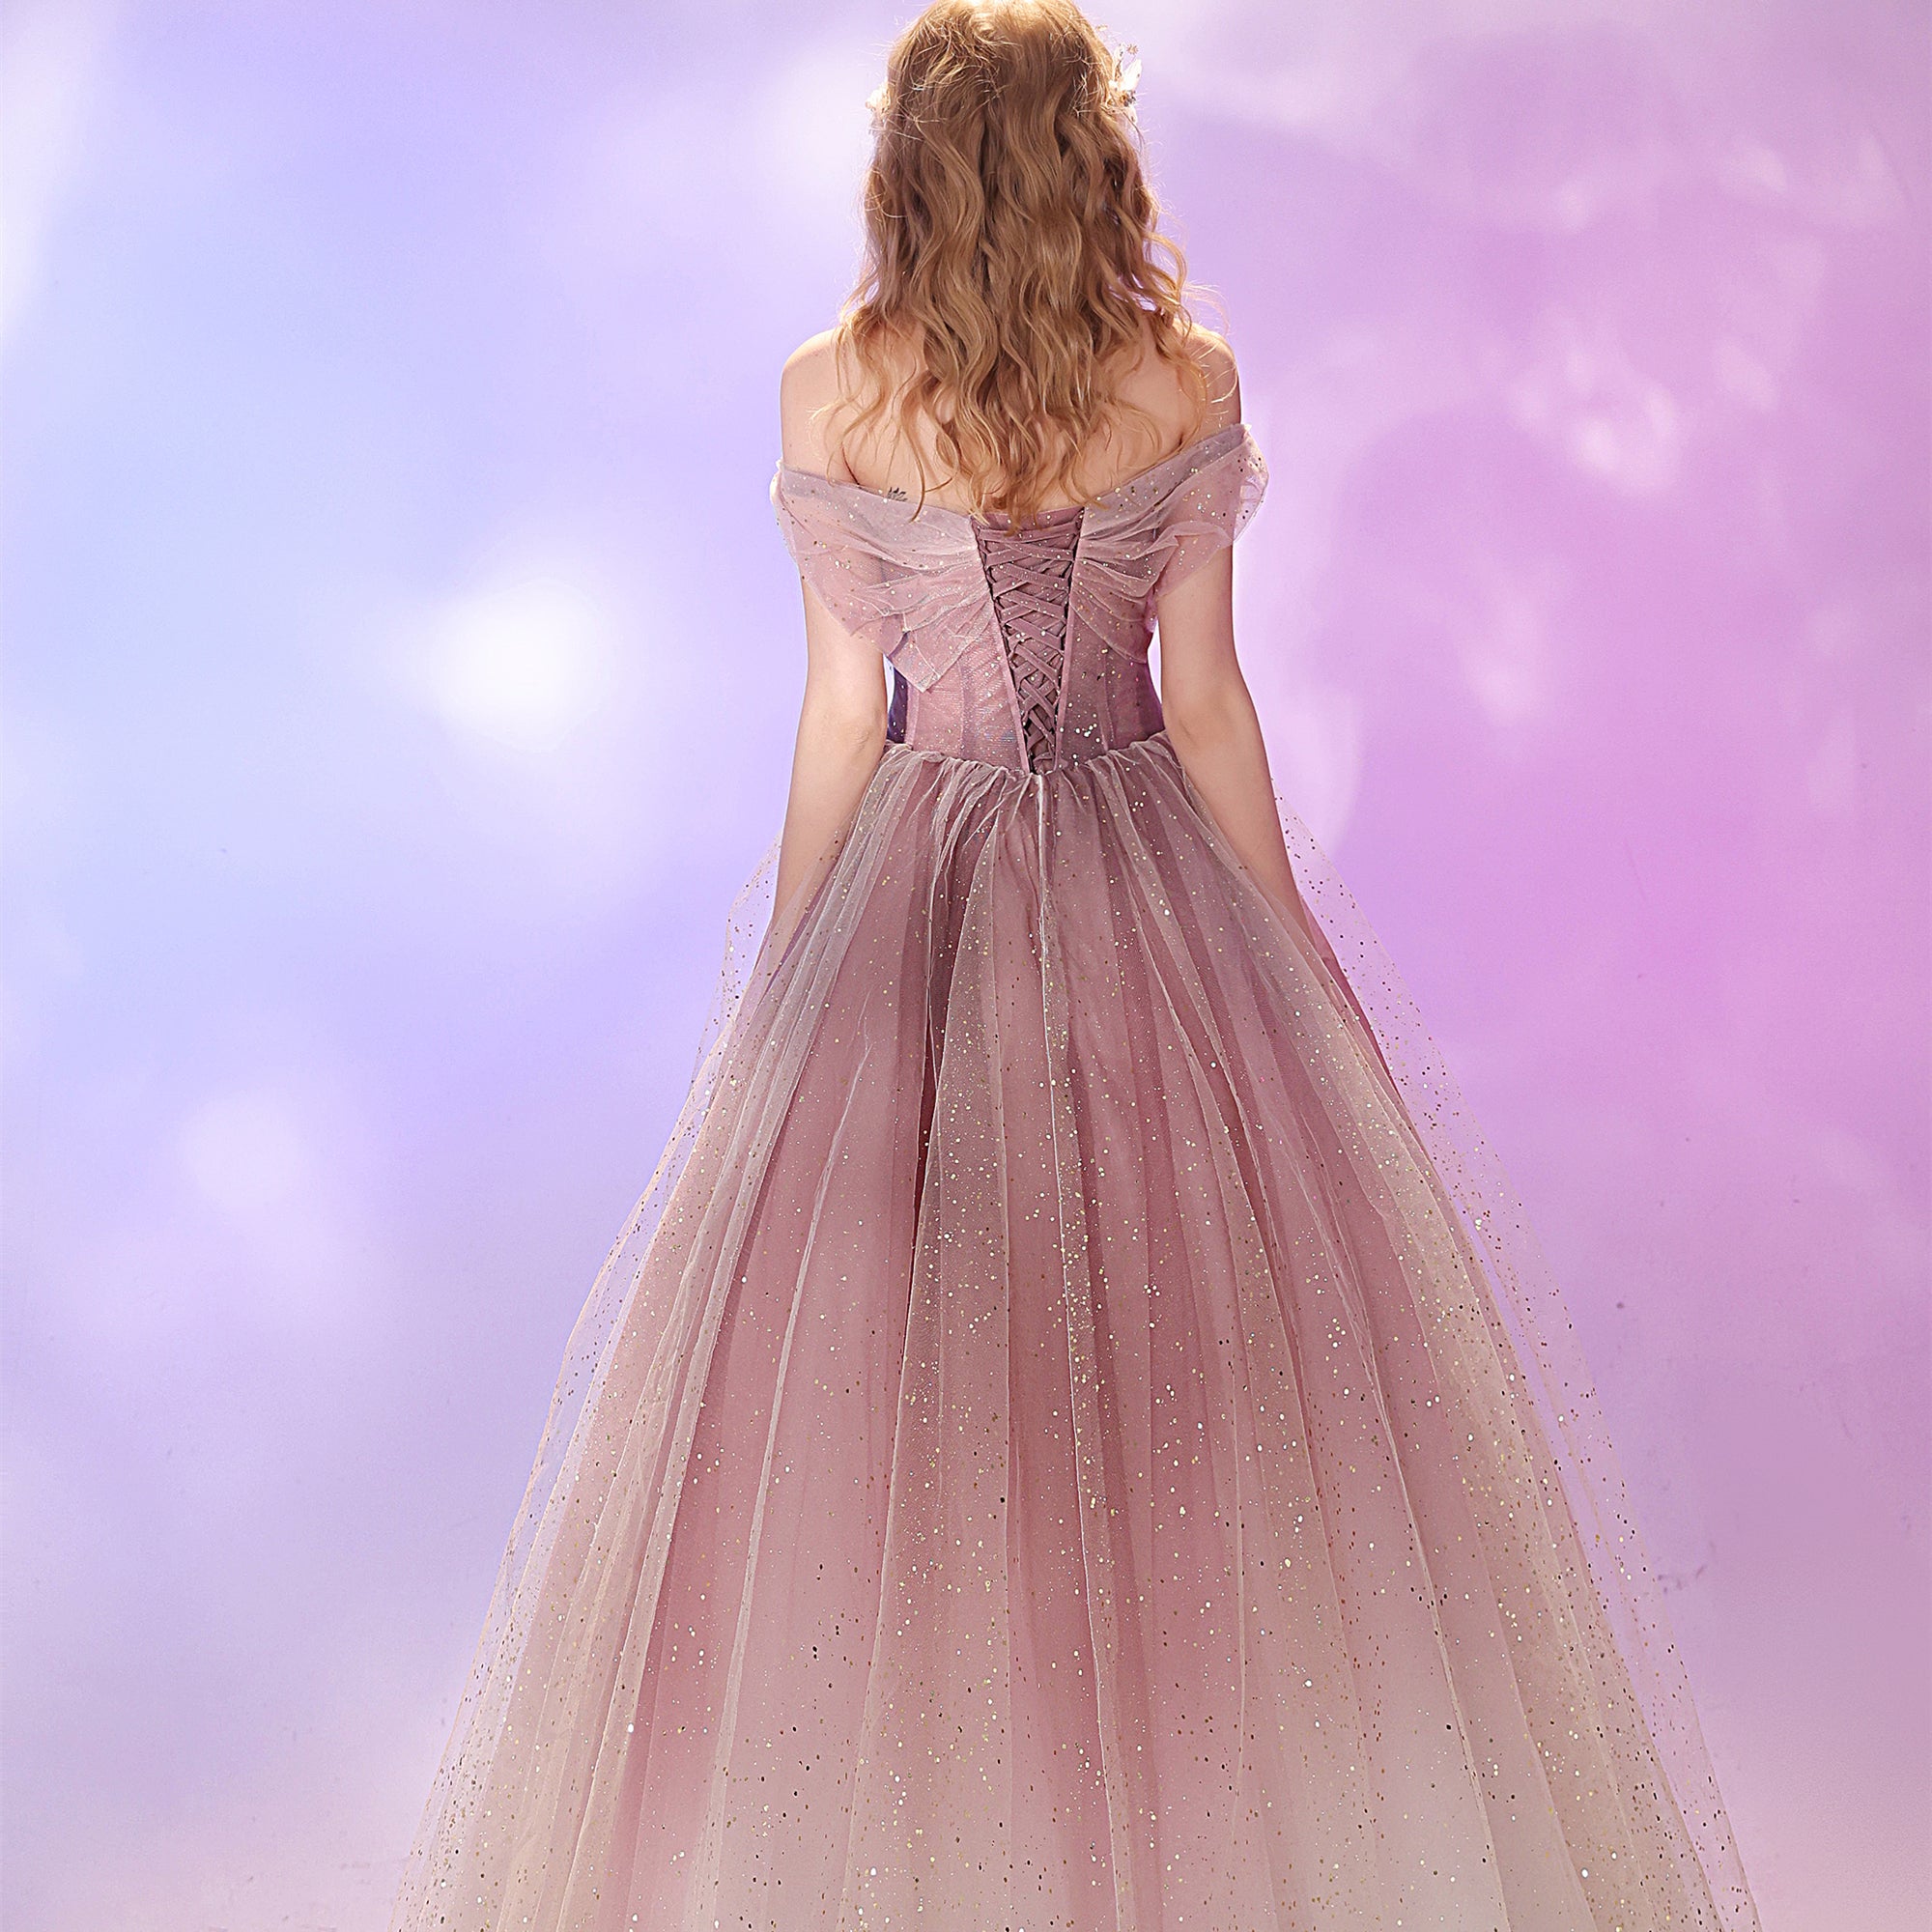 Obrem Pink Tulle Prom Dresses, Lovely Princess Prom Dresses, 2021 Prom Dresses, Newest Long Prom Dresses